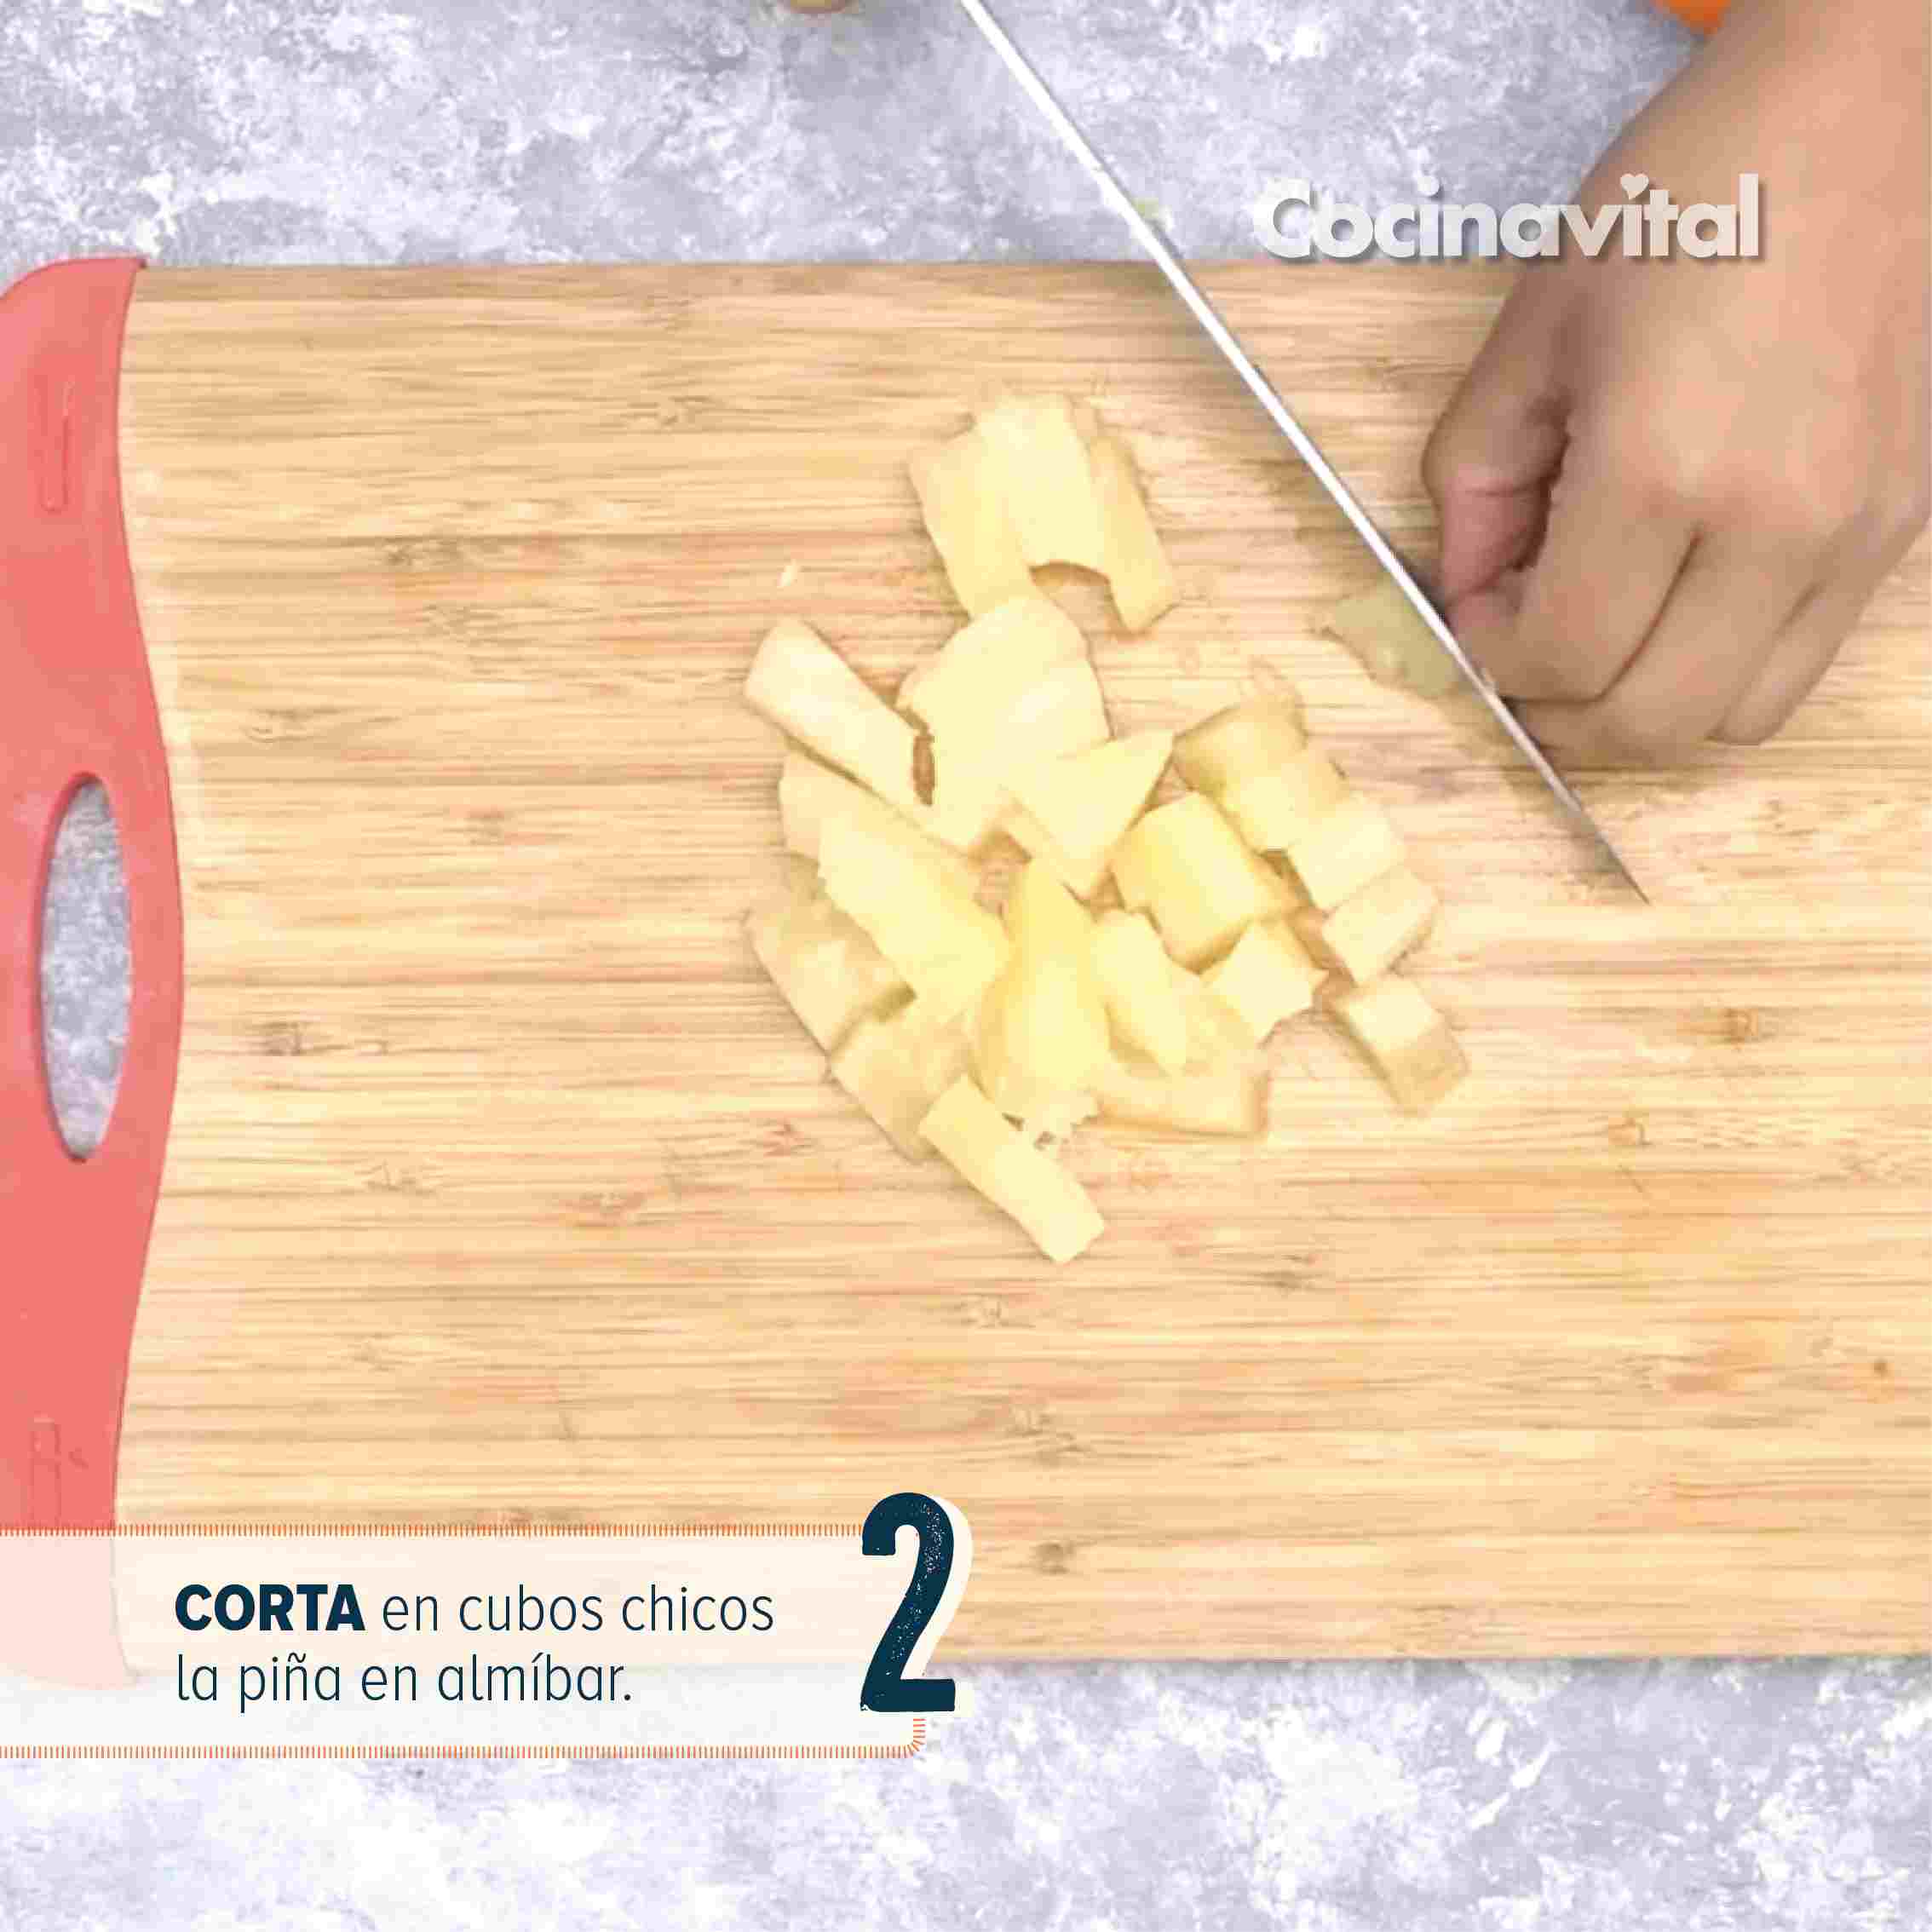 Cómo hacer una ensalada cremosa de zanahoria en 5 pasos